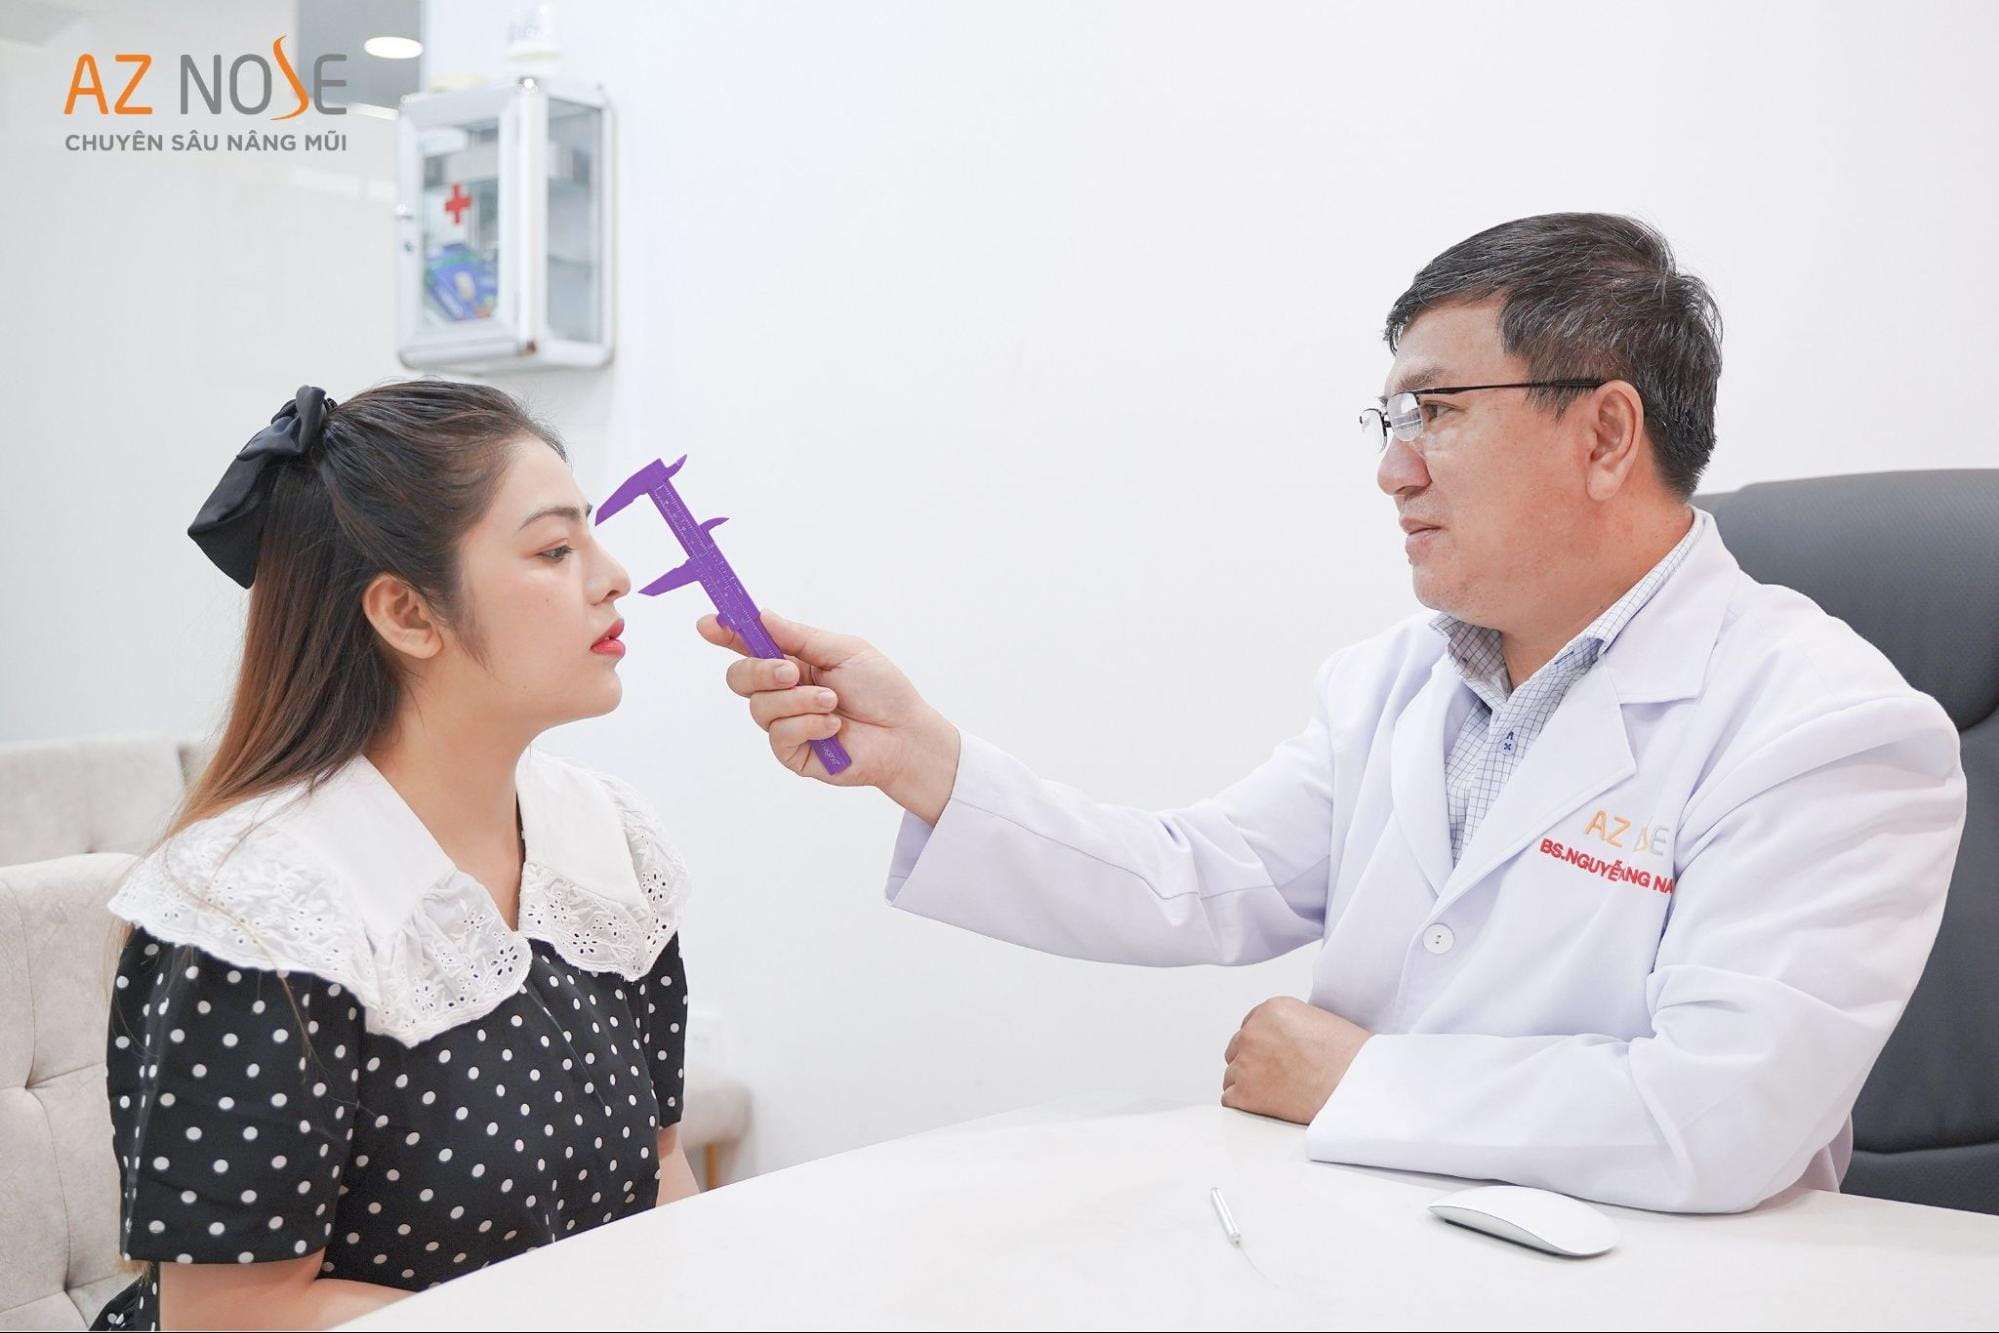 Bác sĩ CKI Nguyễn Hoàng Nam thăm khám cho khách hàng